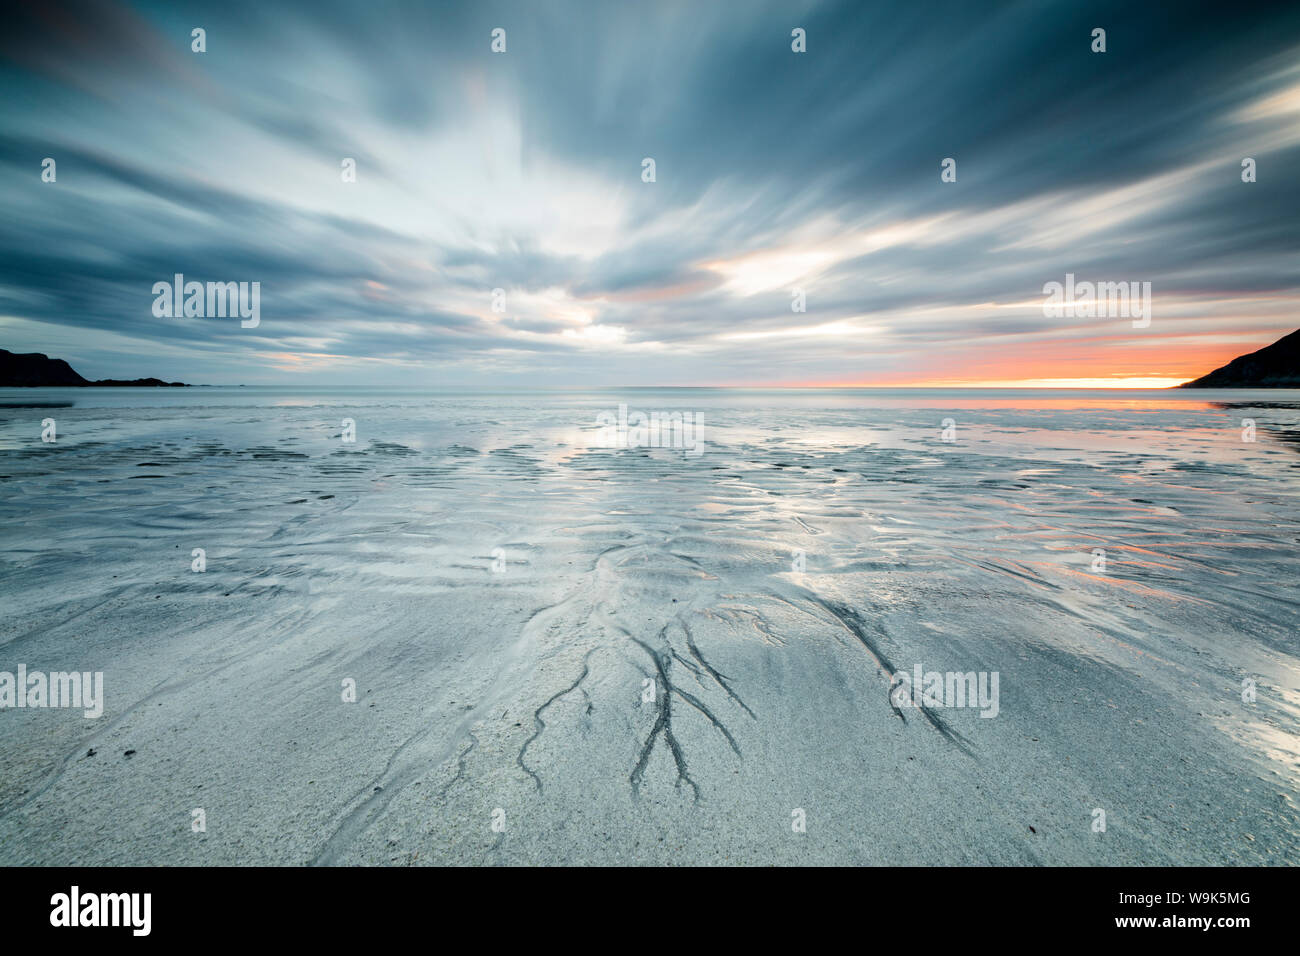 Soleil de minuit et les nuages frame la plage de sable de Skagsanden, Flakstad, comté de Nordland, îles Lofoten, Norvège, Scandinavie, Europe Banque D'Images